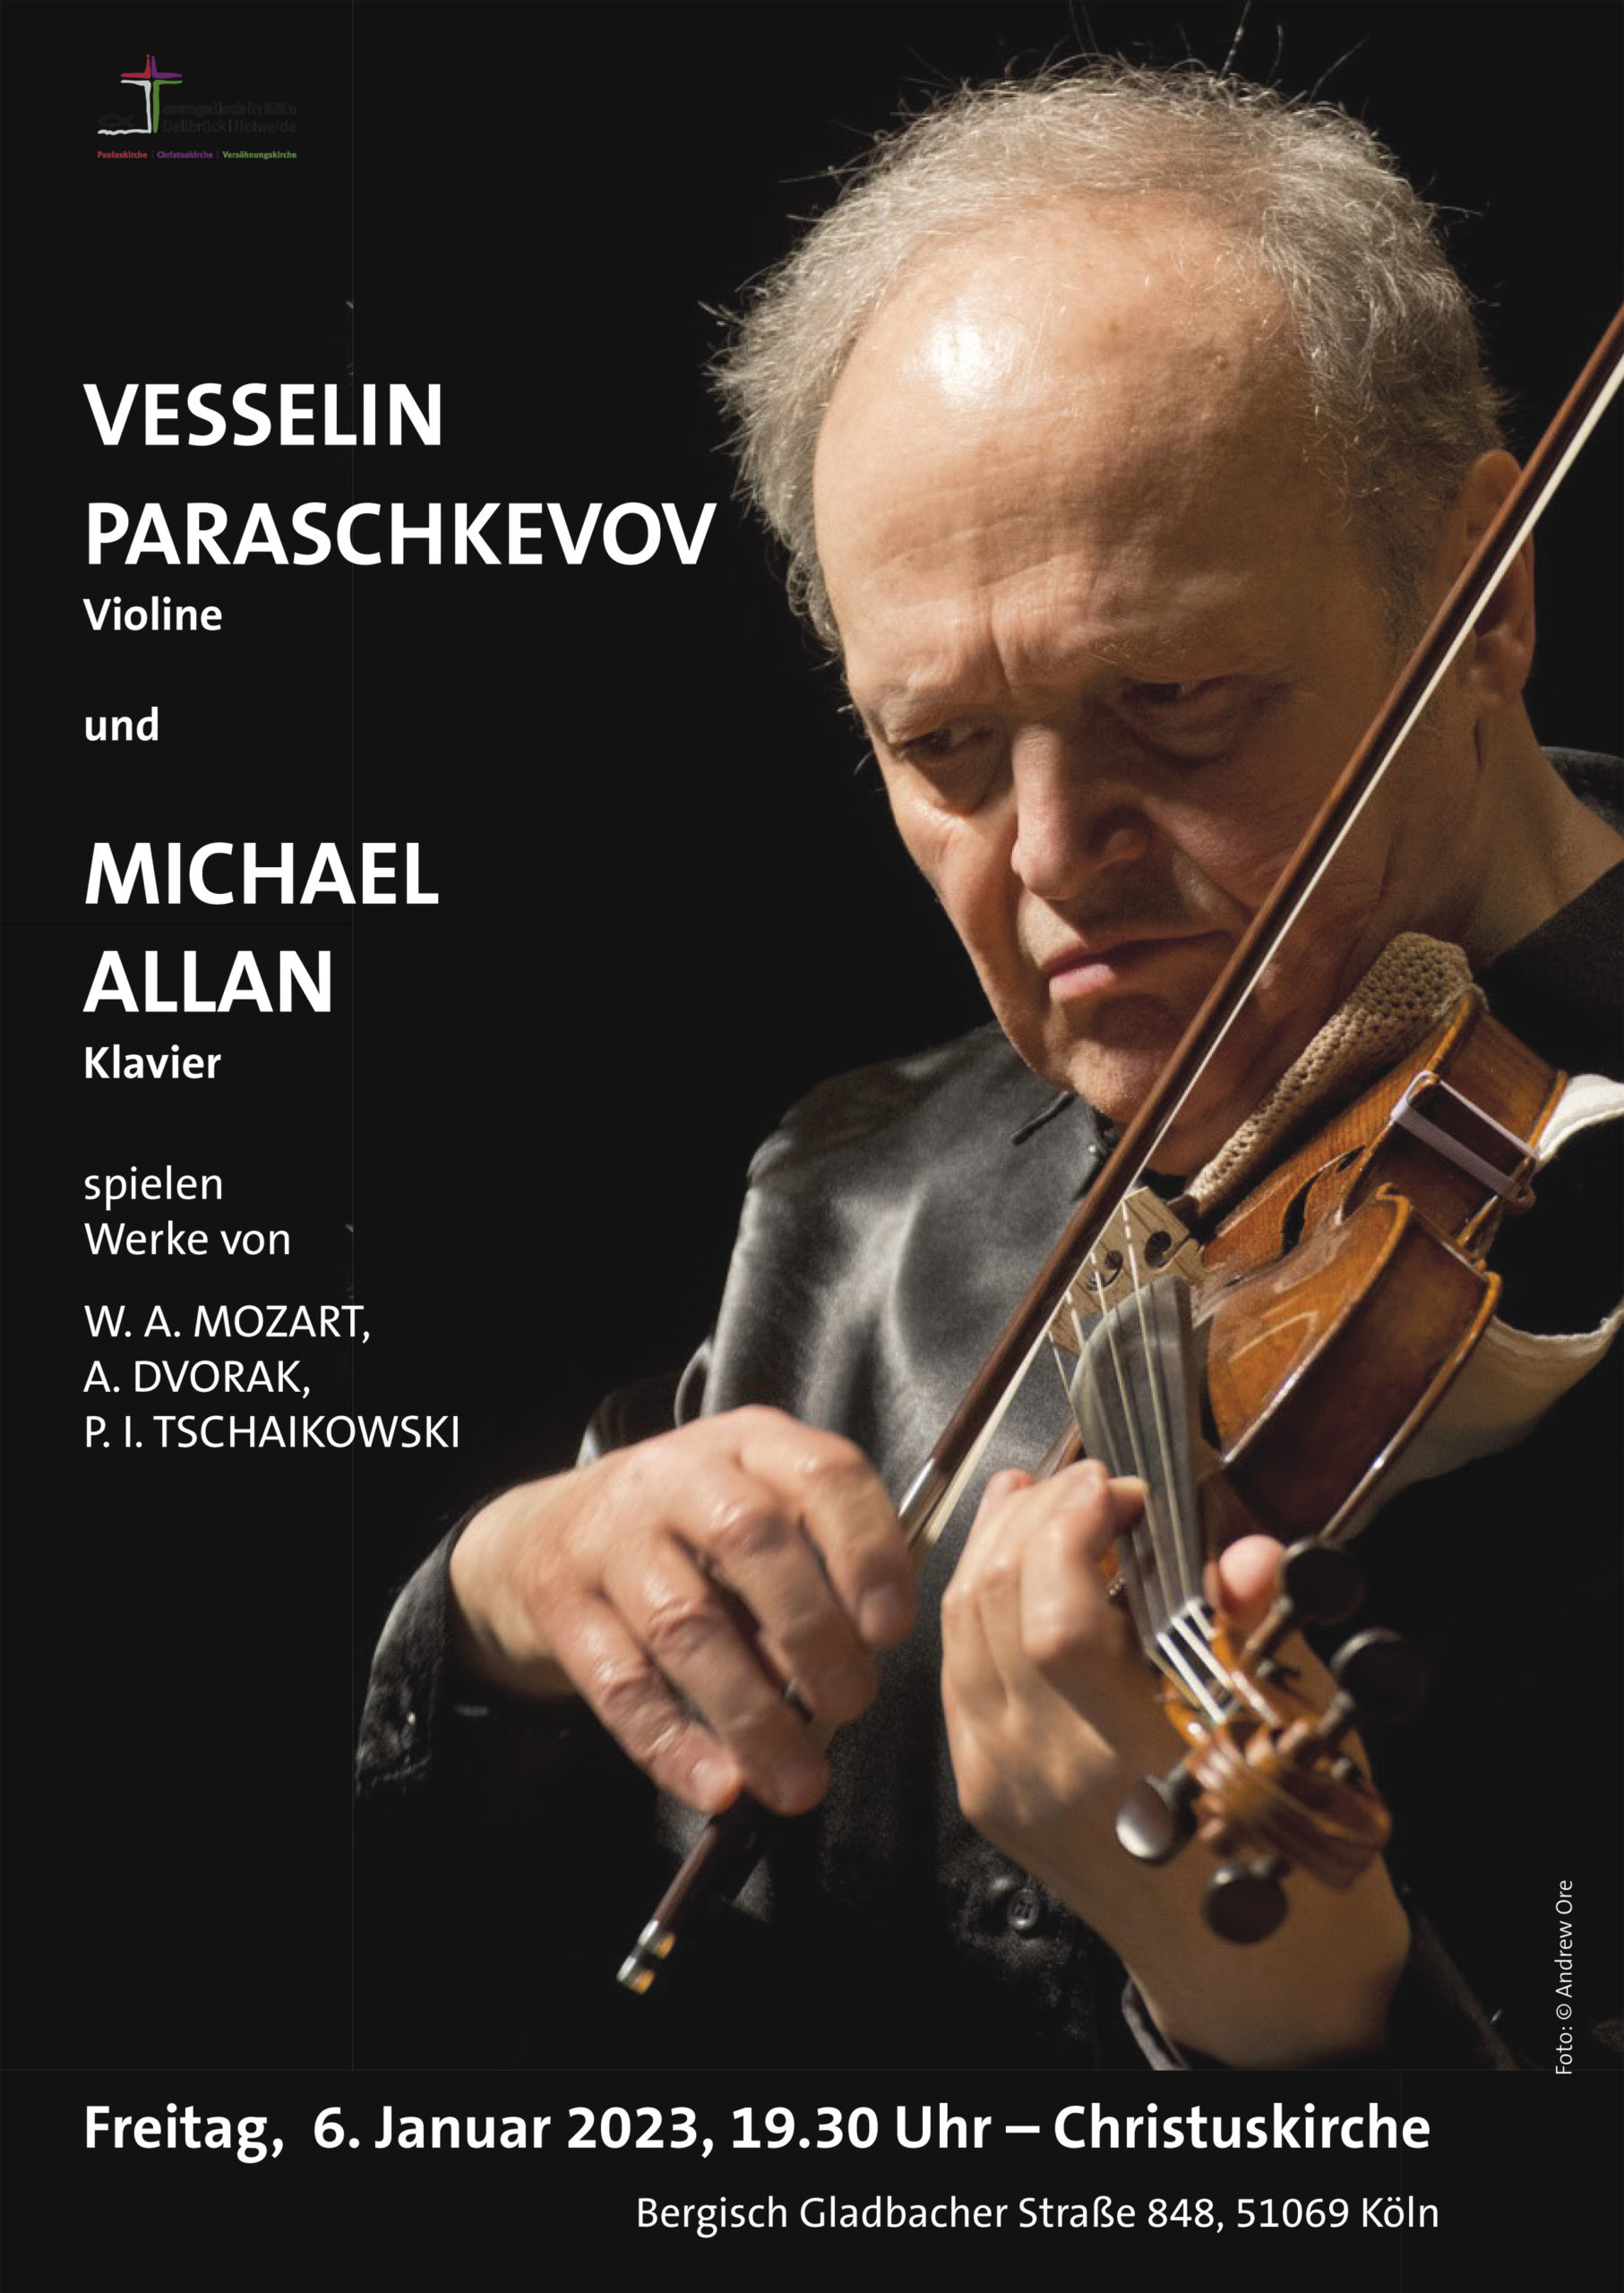 You are currently viewing Vesselin Paraschkevov (Violine) zusammen mit seinem Duopartner Michael Allan (Klavier) in der Christuskirche